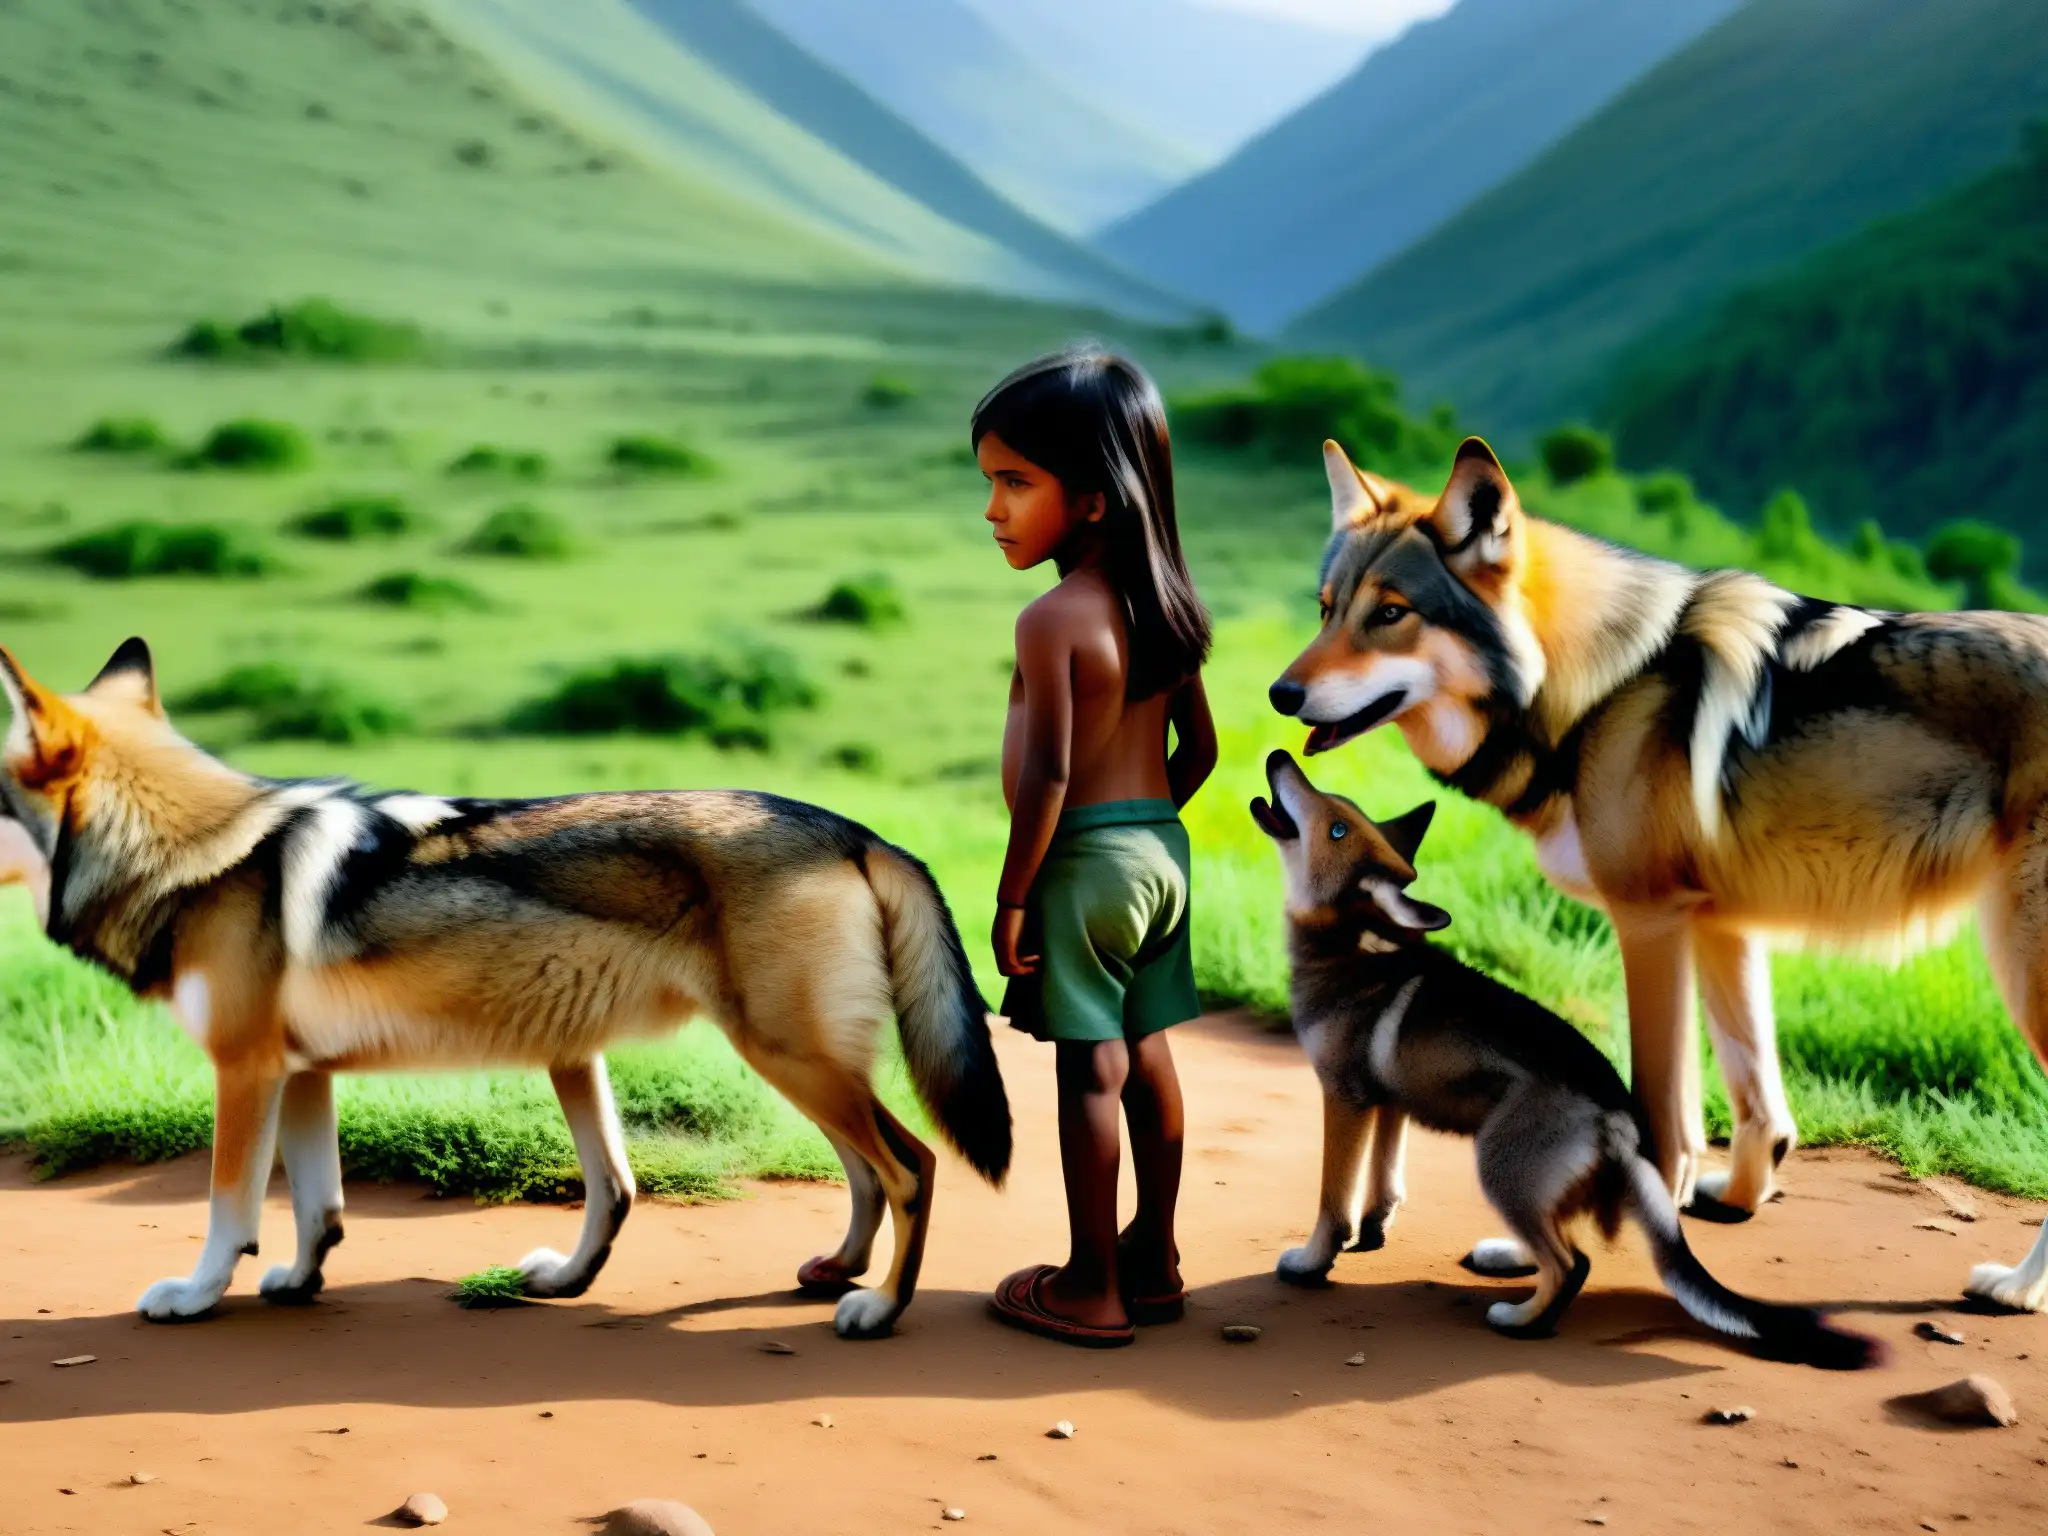 Niños y lobos en un pueblo remoto de la India, creando un enigma sobre el mito de los niños lobo en la naturaleza salvaje